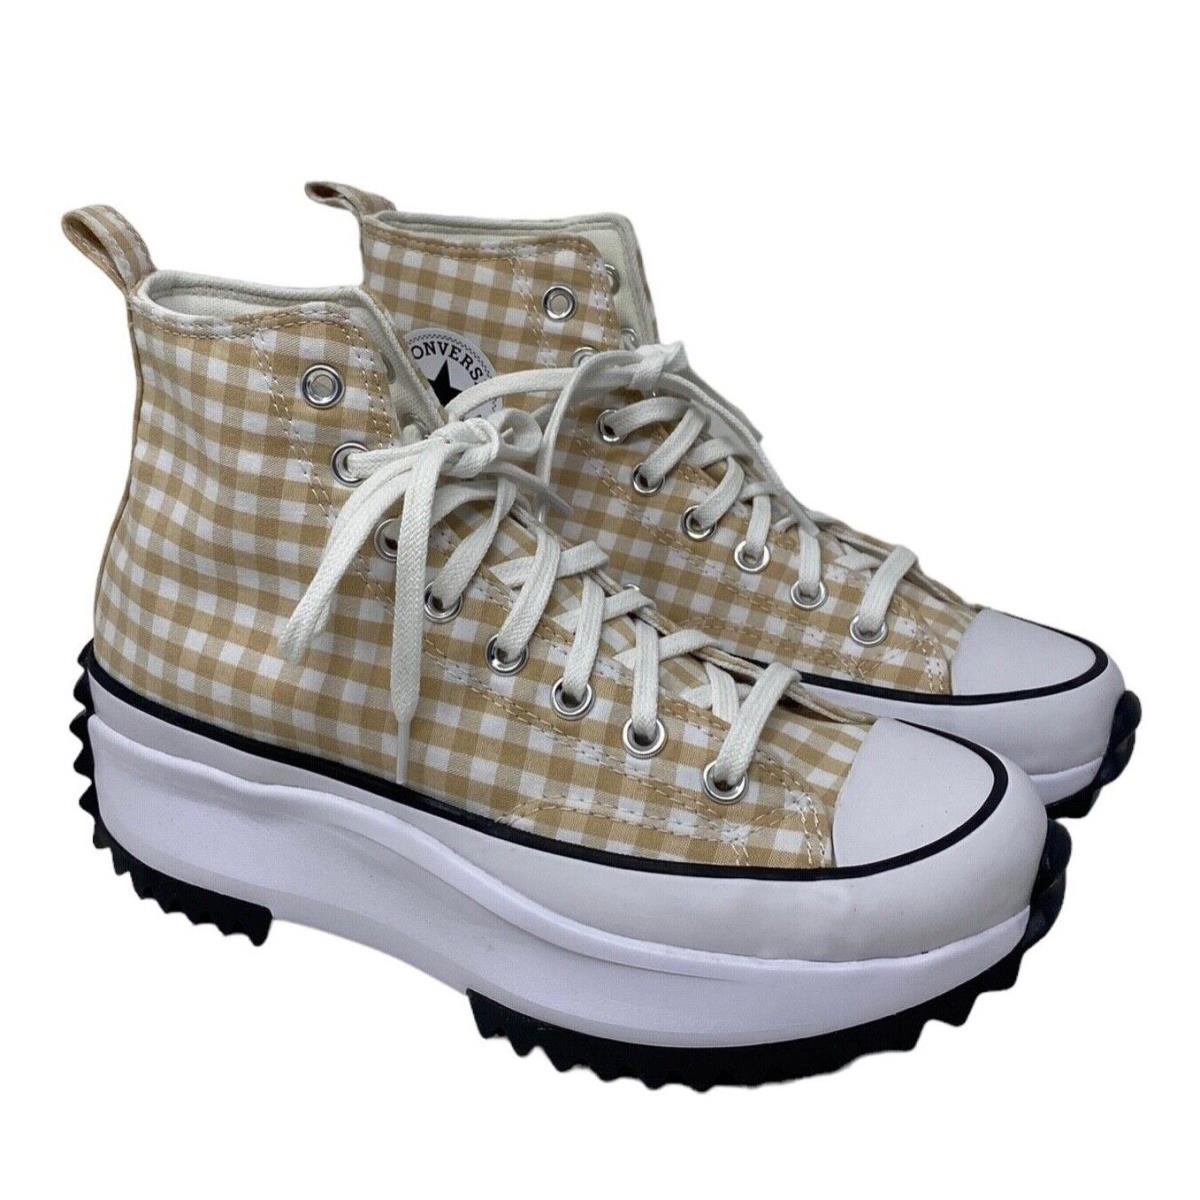 Converse Run Star Hi Platform Shoes Women Size Beige White Plaid Canvas A05999C